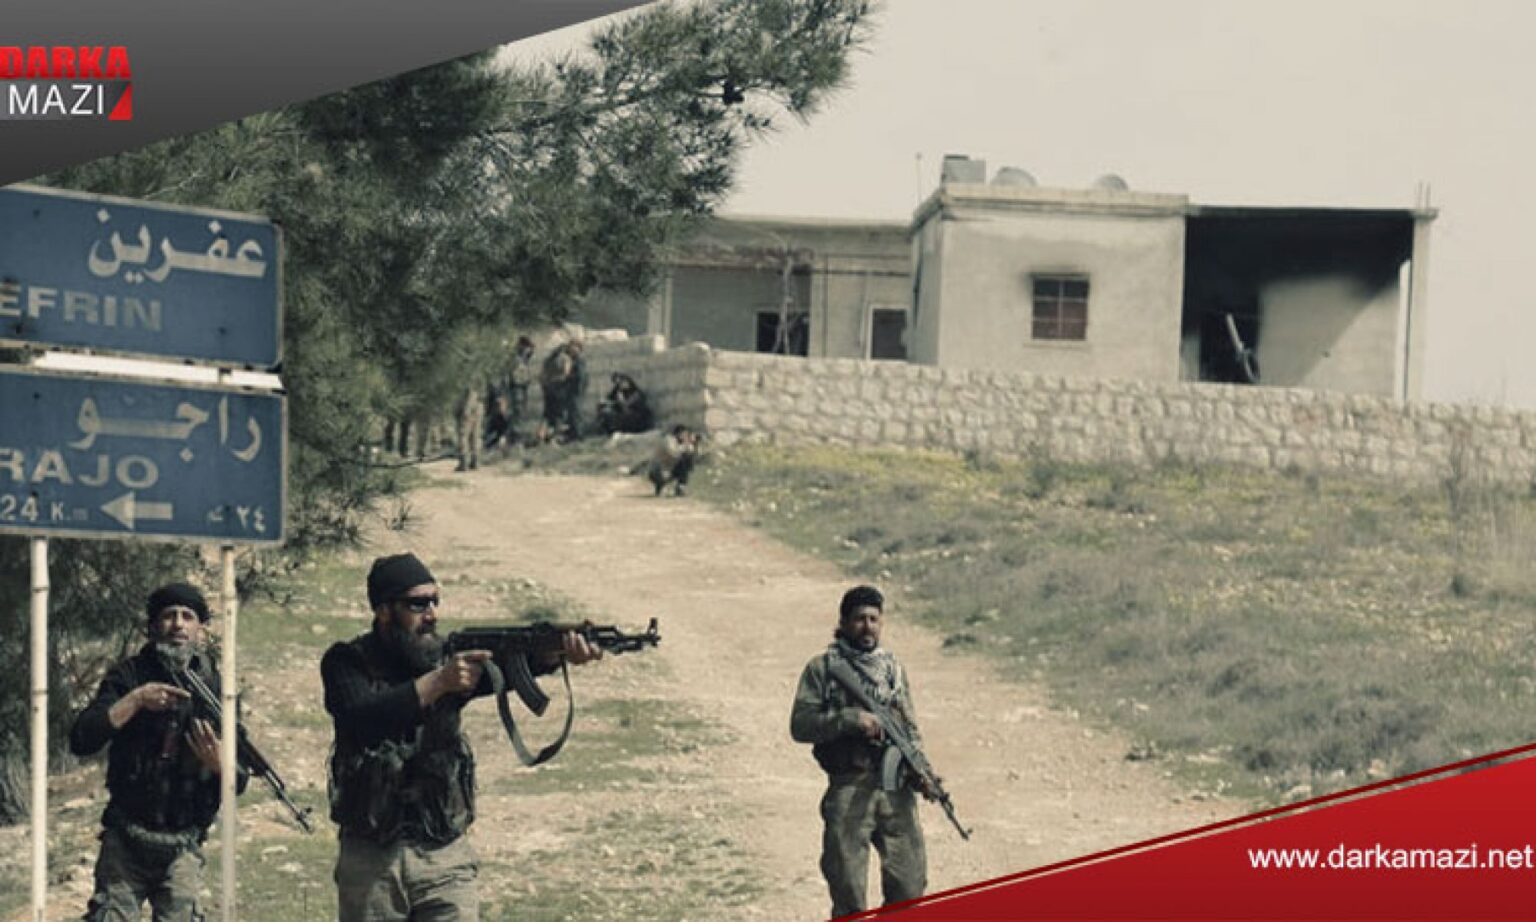 Efrin: Silahlı gruplar Raco'da 3 sivil vatandaşı kaçırdı, fidye istedi